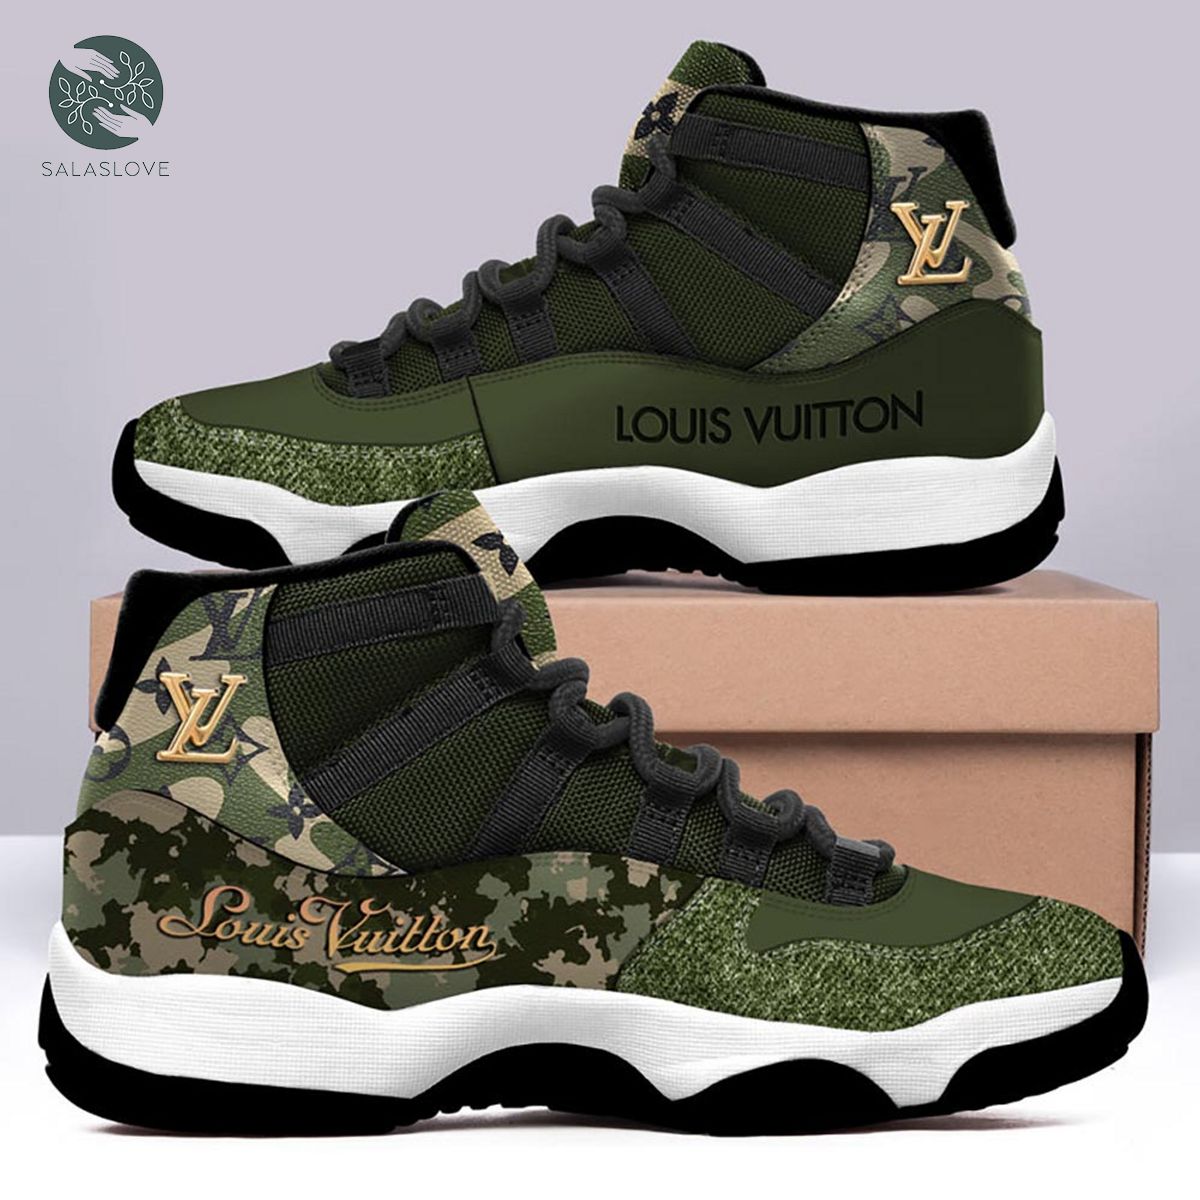 Louis Vuitton Green Camo Air Jordan 11 Sneakers Shoes Hot For Men Women